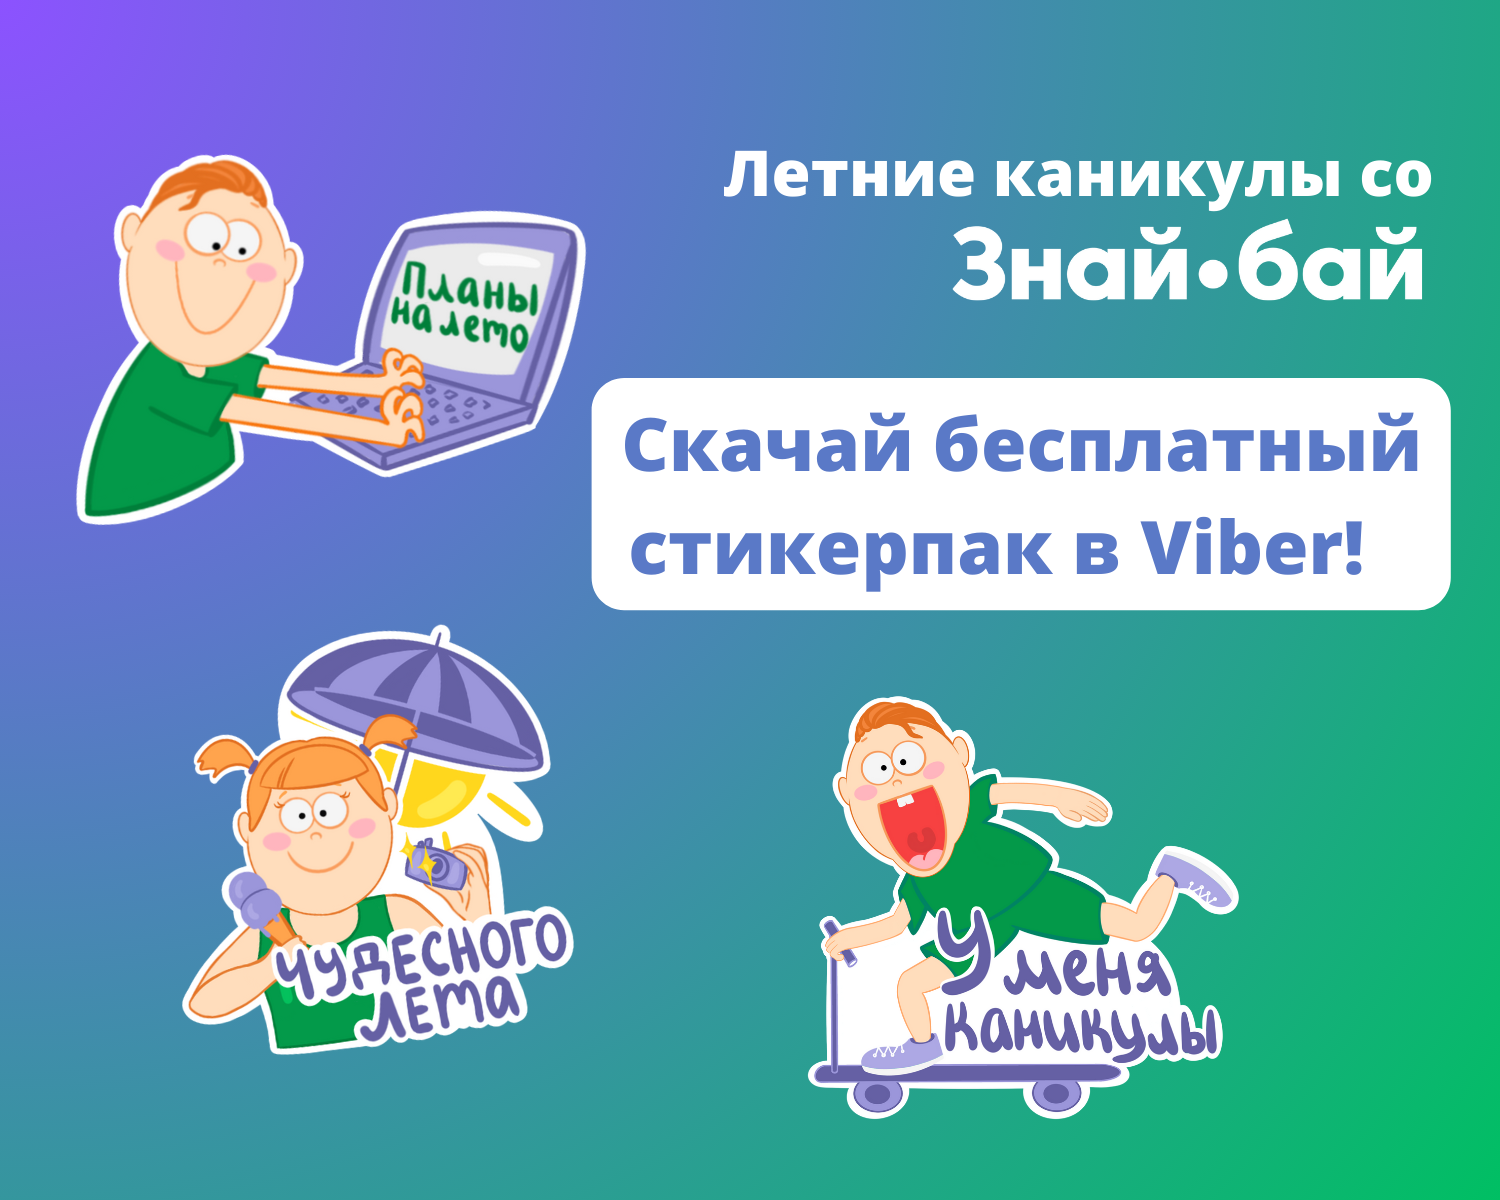 «Летние каникулы со Знай.бай»: уникальные стикеры в Viber!